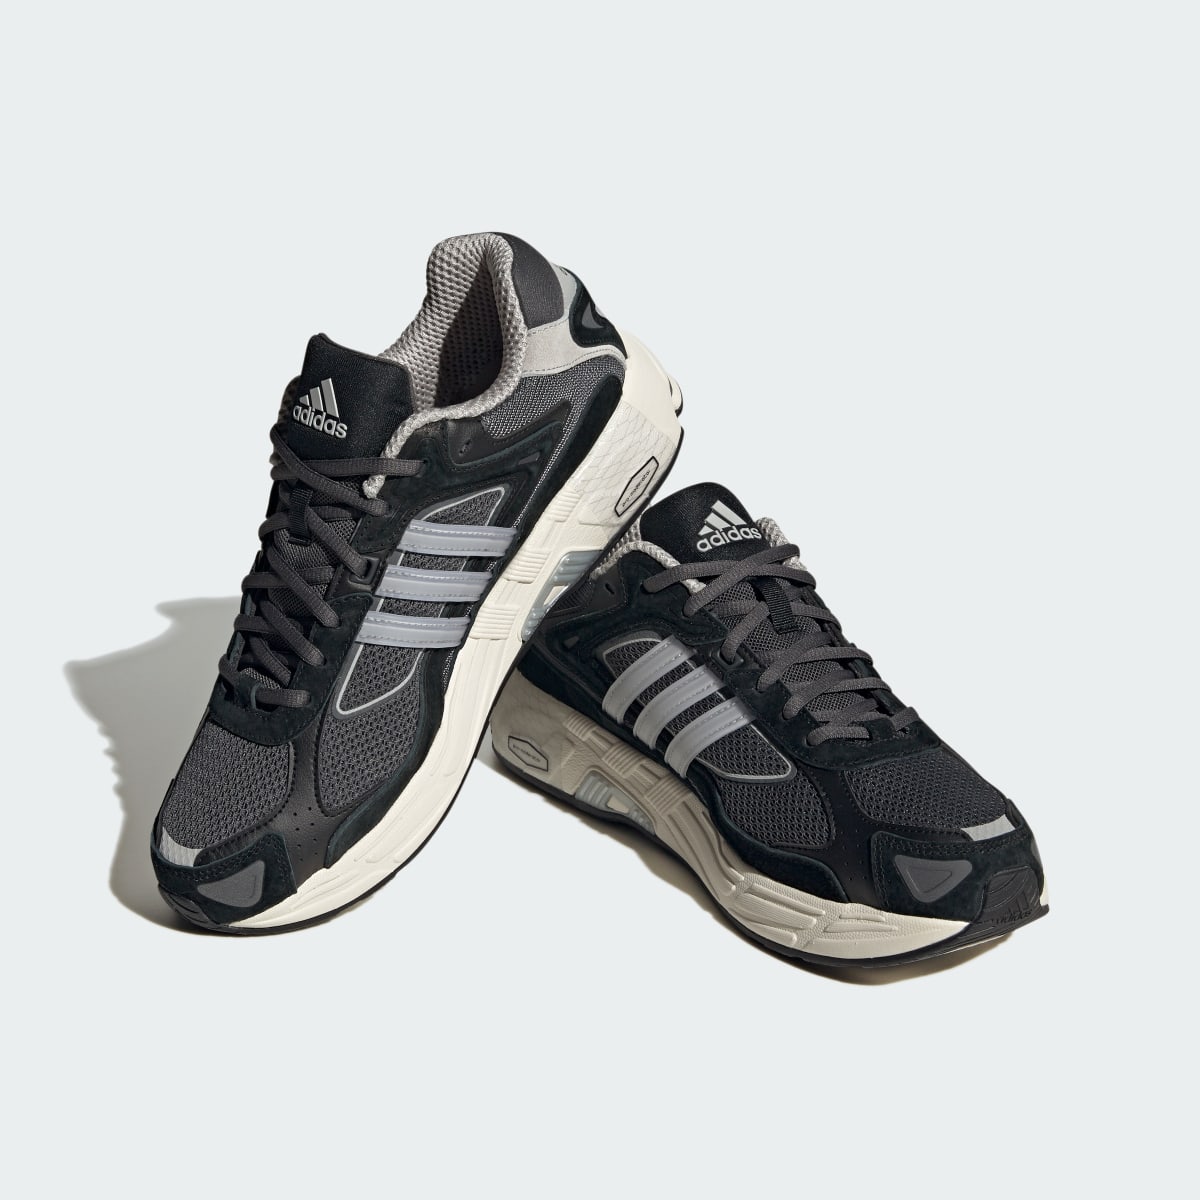 Adidas Response CL Schuh. 5